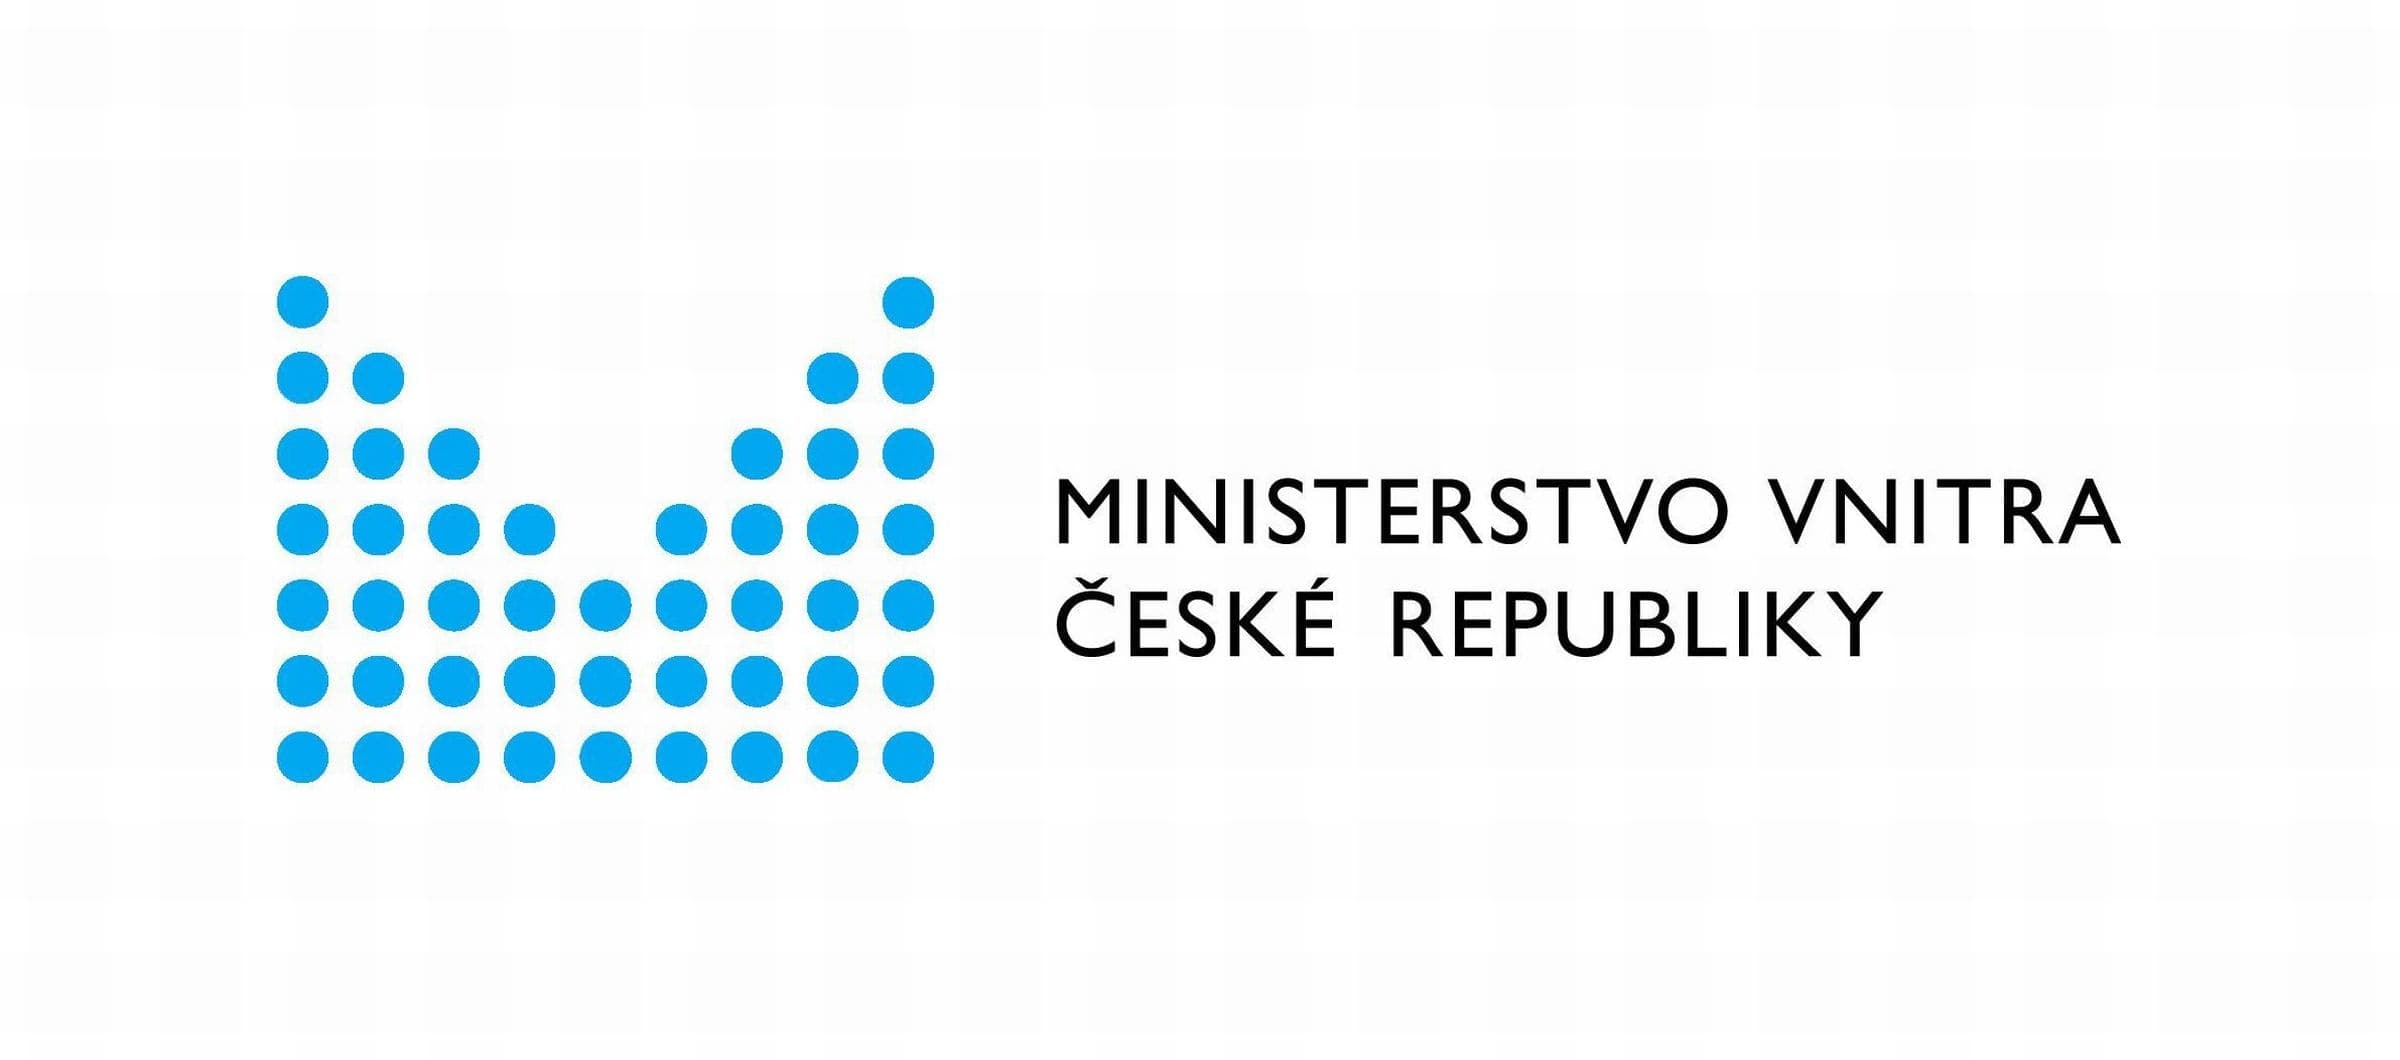 МВД планирует ввести новую информационную систему для пребывания иностранцев в Чешской Республике